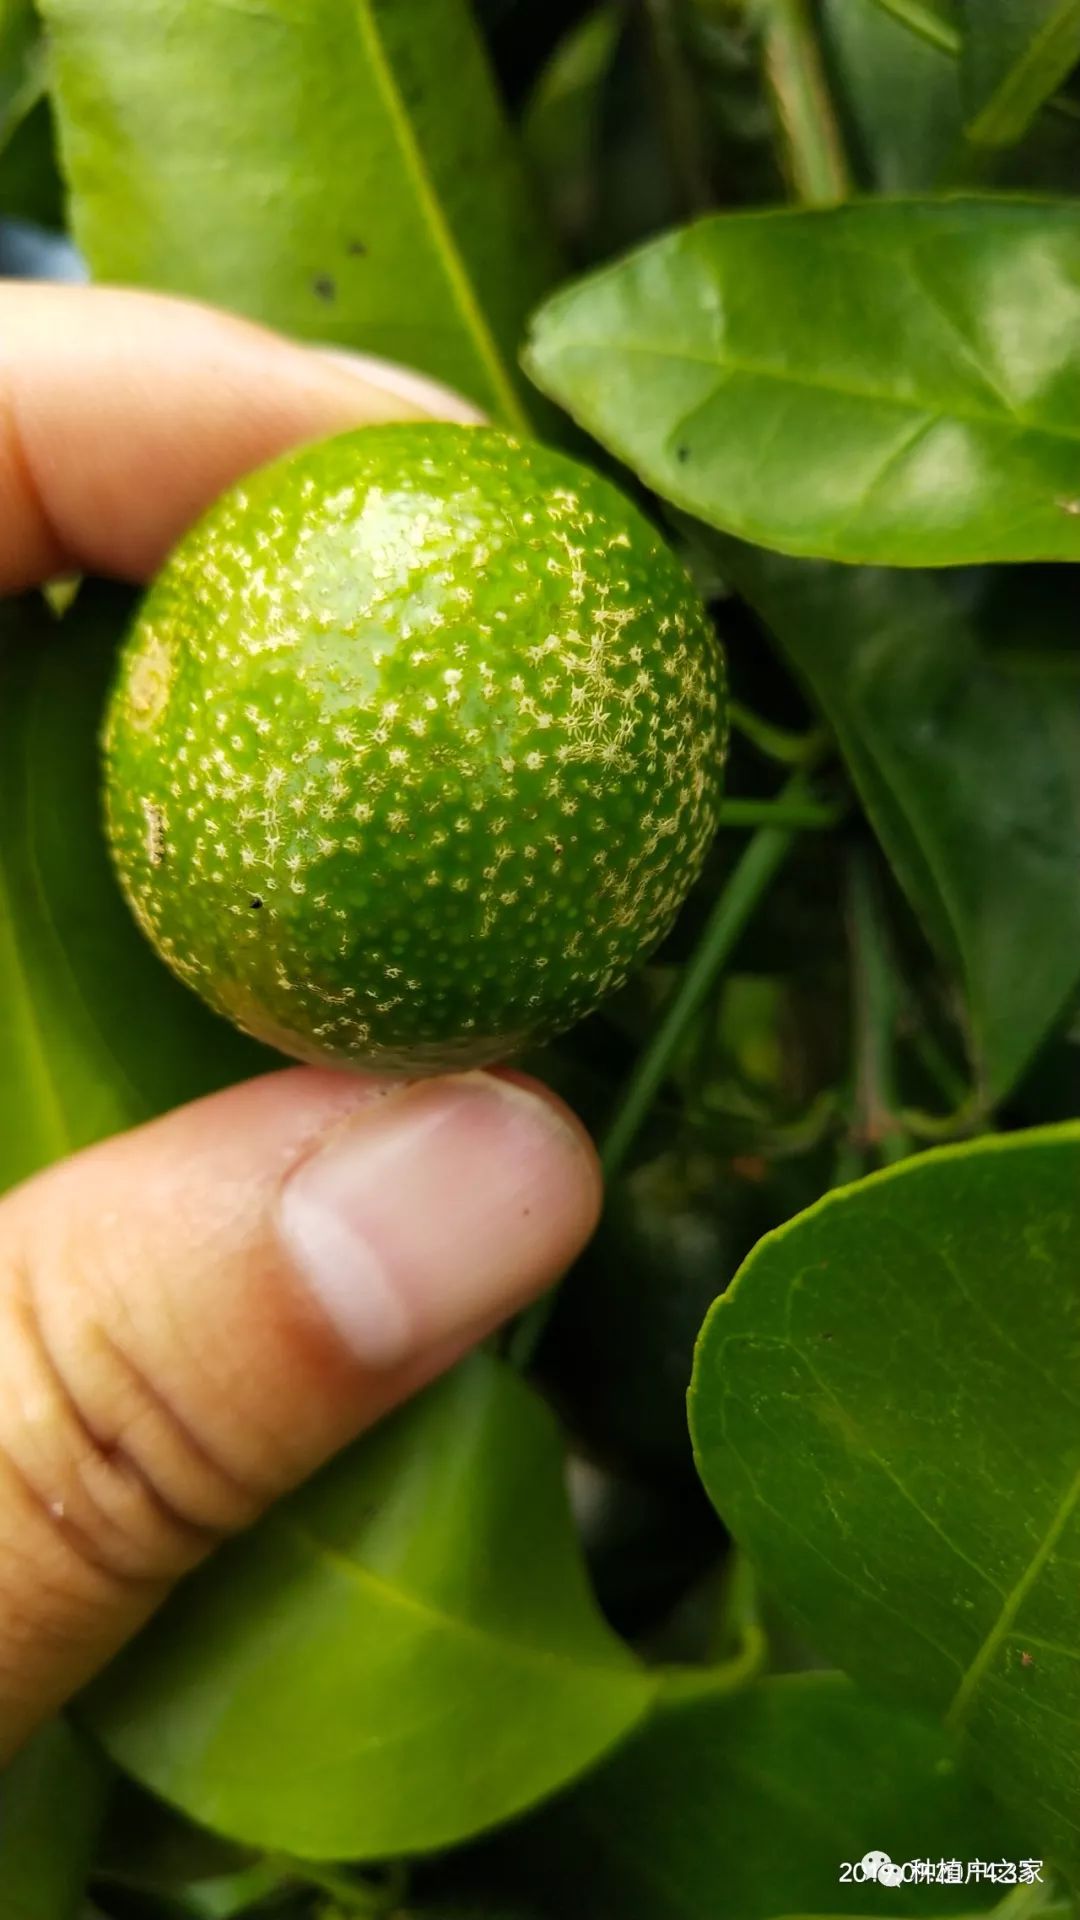 柑橘砂皮病表现症状及防治方法